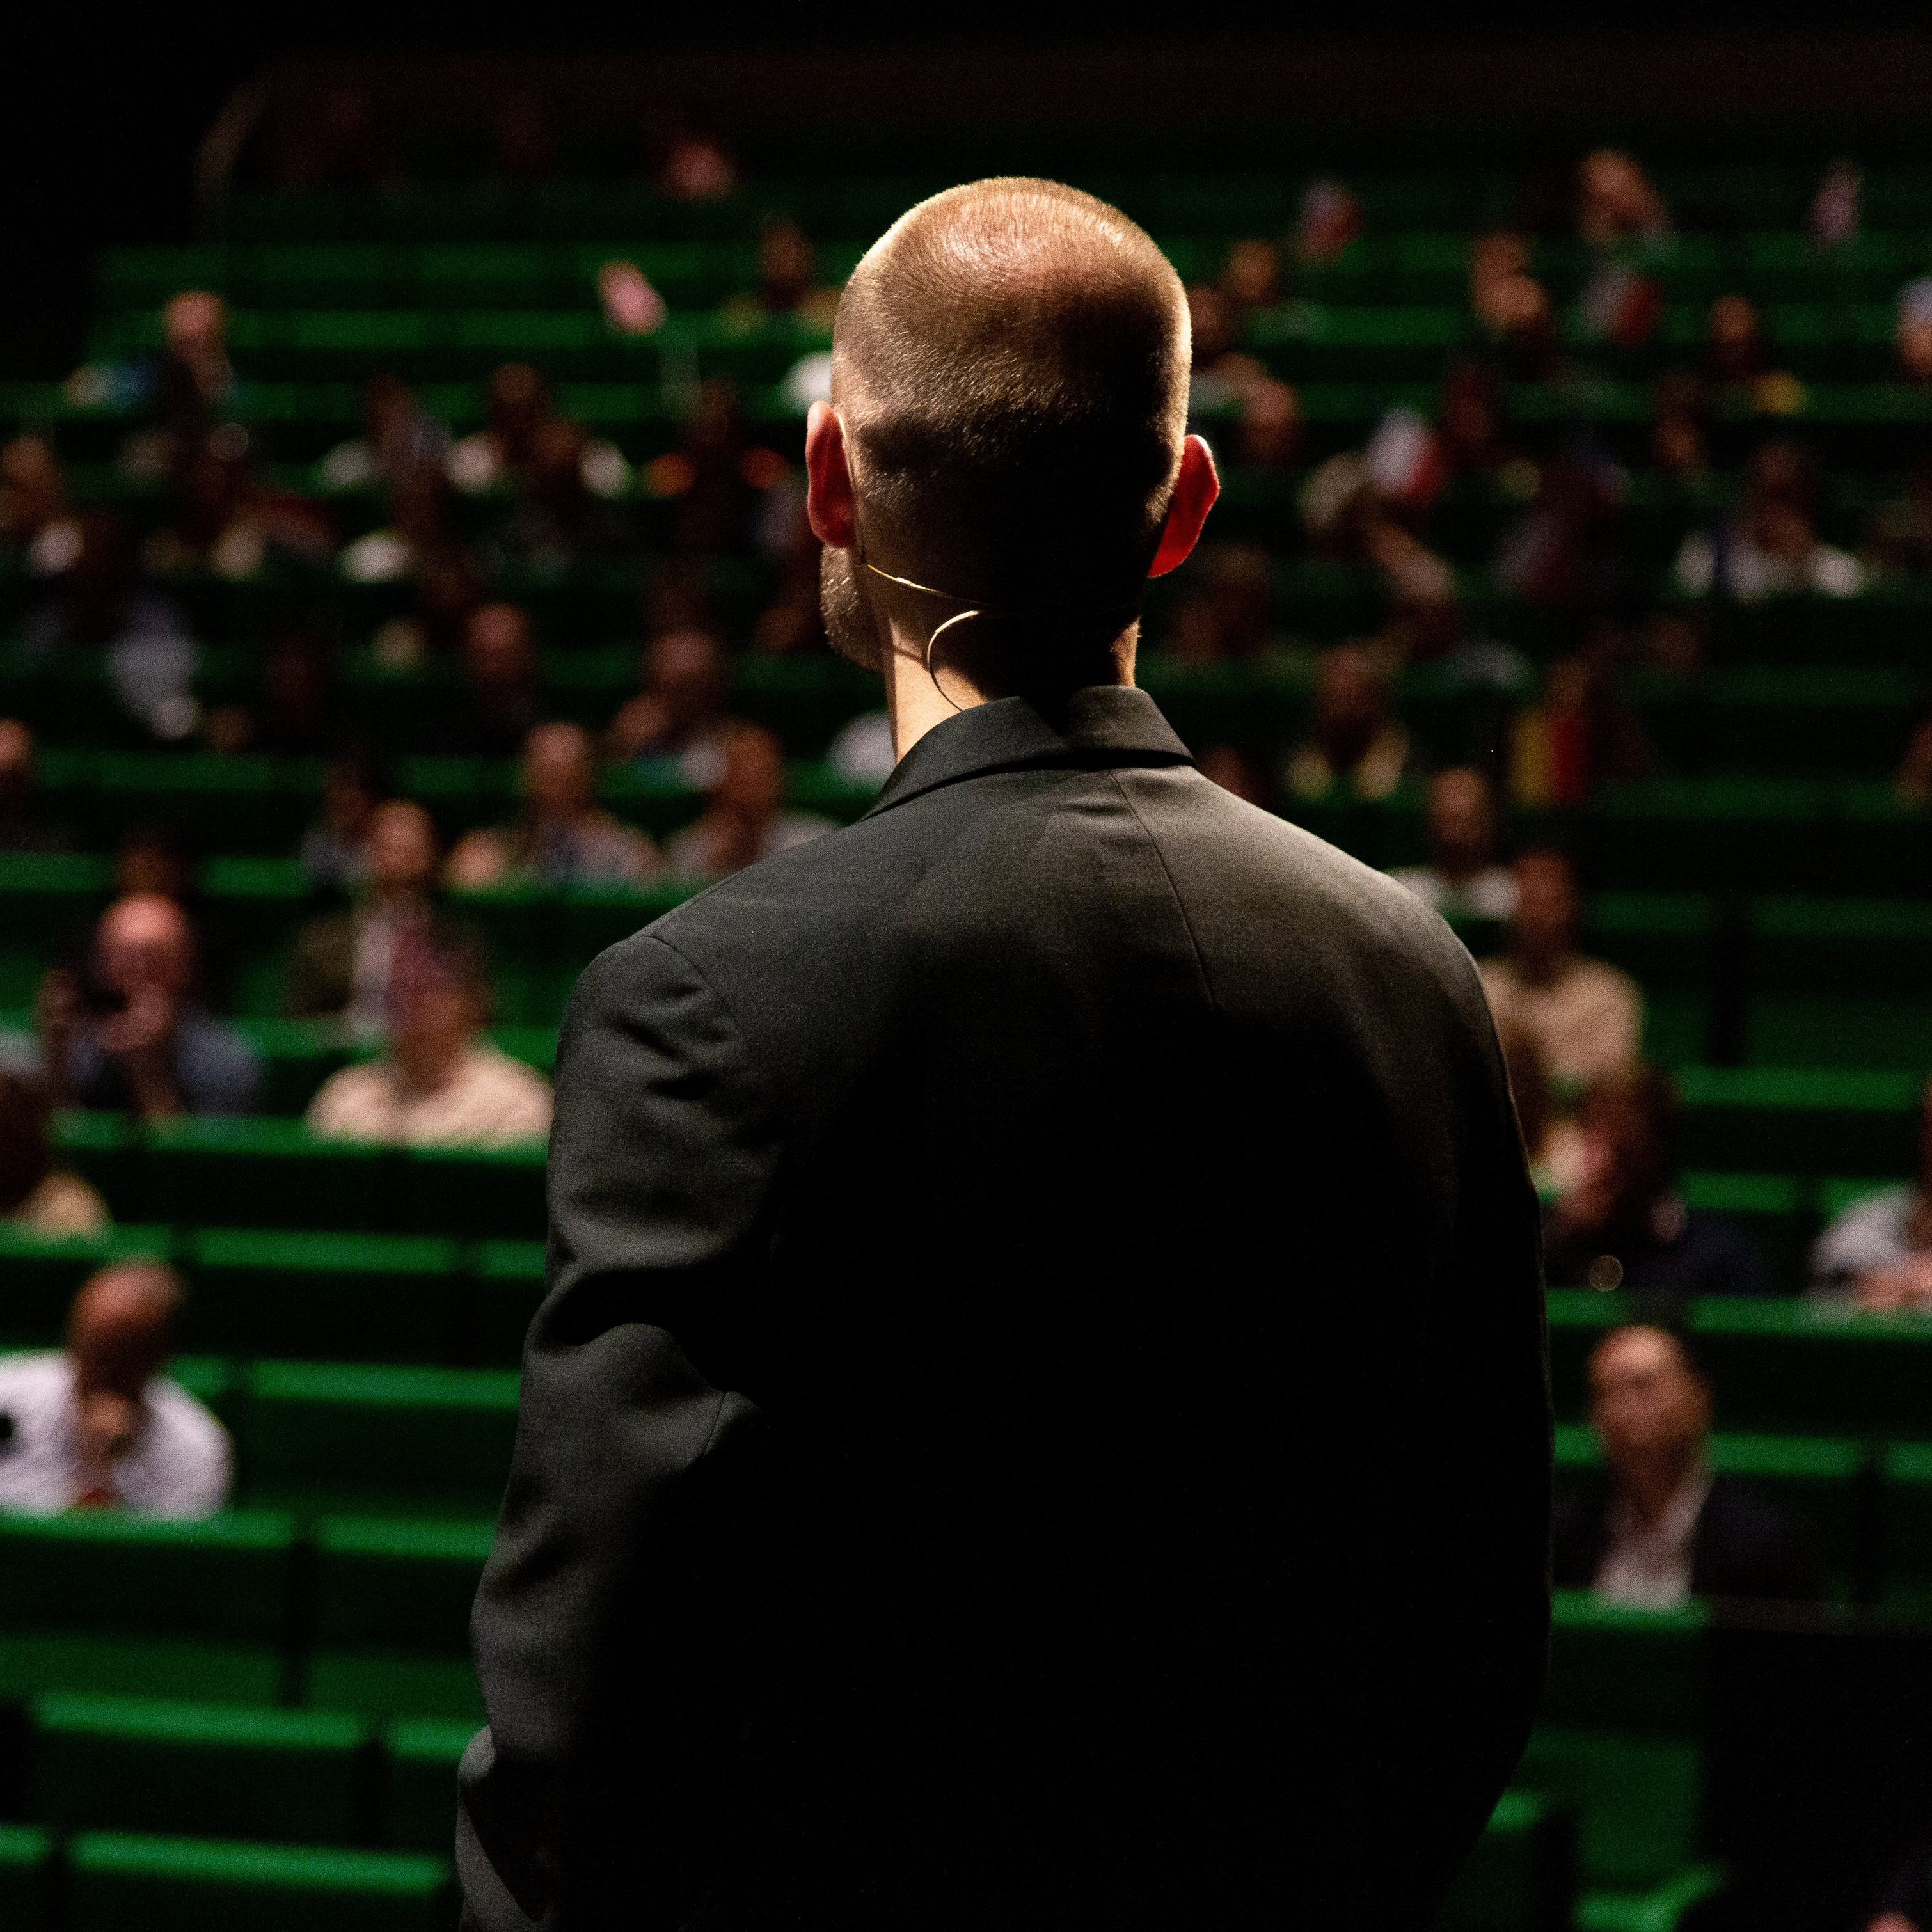 Homme en costume noir face à un public dans un auditorium aux sièges verts.